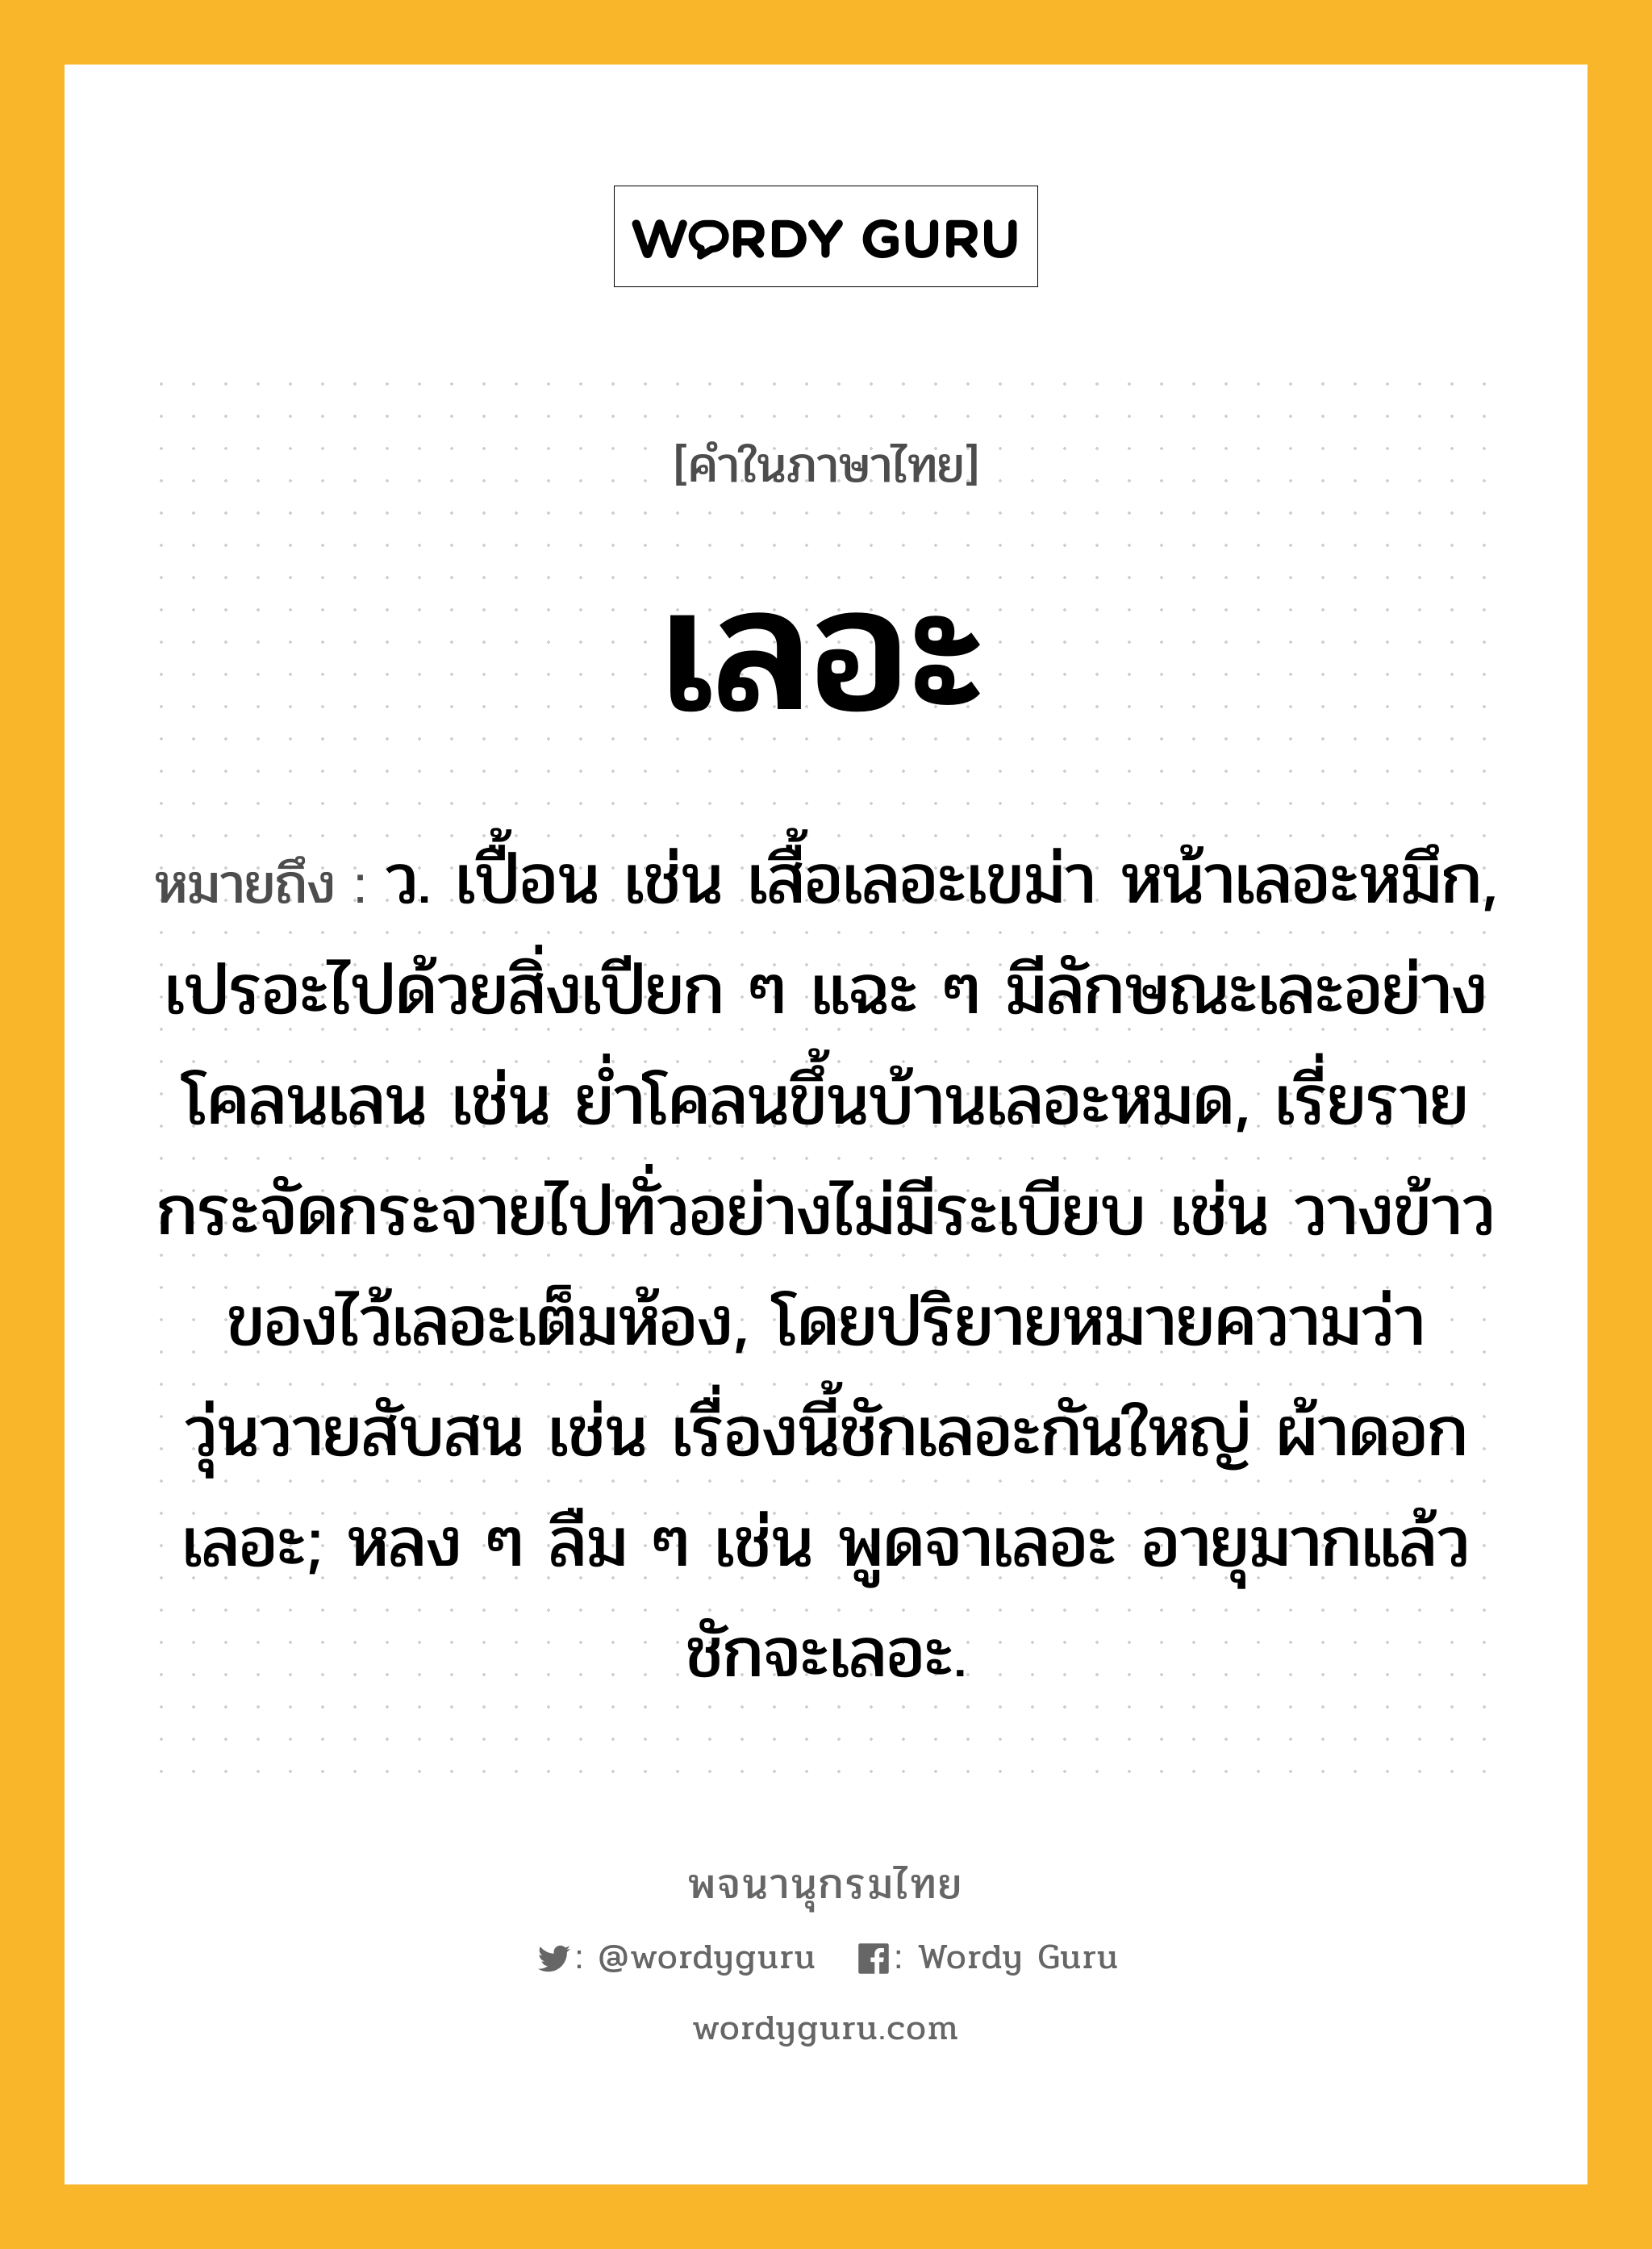 เลอะ ความหมาย หมายถึงอะไร?, คำในภาษาไทย เลอะ หมายถึง ว. เปื้อน เช่น เสื้อเลอะเขม่า หน้าเลอะหมึก, เปรอะไปด้วยสิ่งเปียก ๆ แฉะ ๆ มีลักษณะเละอย่างโคลนเลน เช่น ย่ำโคลนขึ้นบ้านเลอะหมด, เรี่ยรายกระจัดกระจายไปทั่วอย่างไม่มีระเบียบ เช่น วางข้าวของไว้เลอะเต็มห้อง, โดยปริยายหมายความว่า วุ่นวายสับสน เช่น เรื่องนี้ชักเลอะกันใหญ่ ผ้าดอกเลอะ; หลง ๆ ลืม ๆ เช่น พูดจาเลอะ อายุมากแล้วชักจะเลอะ.